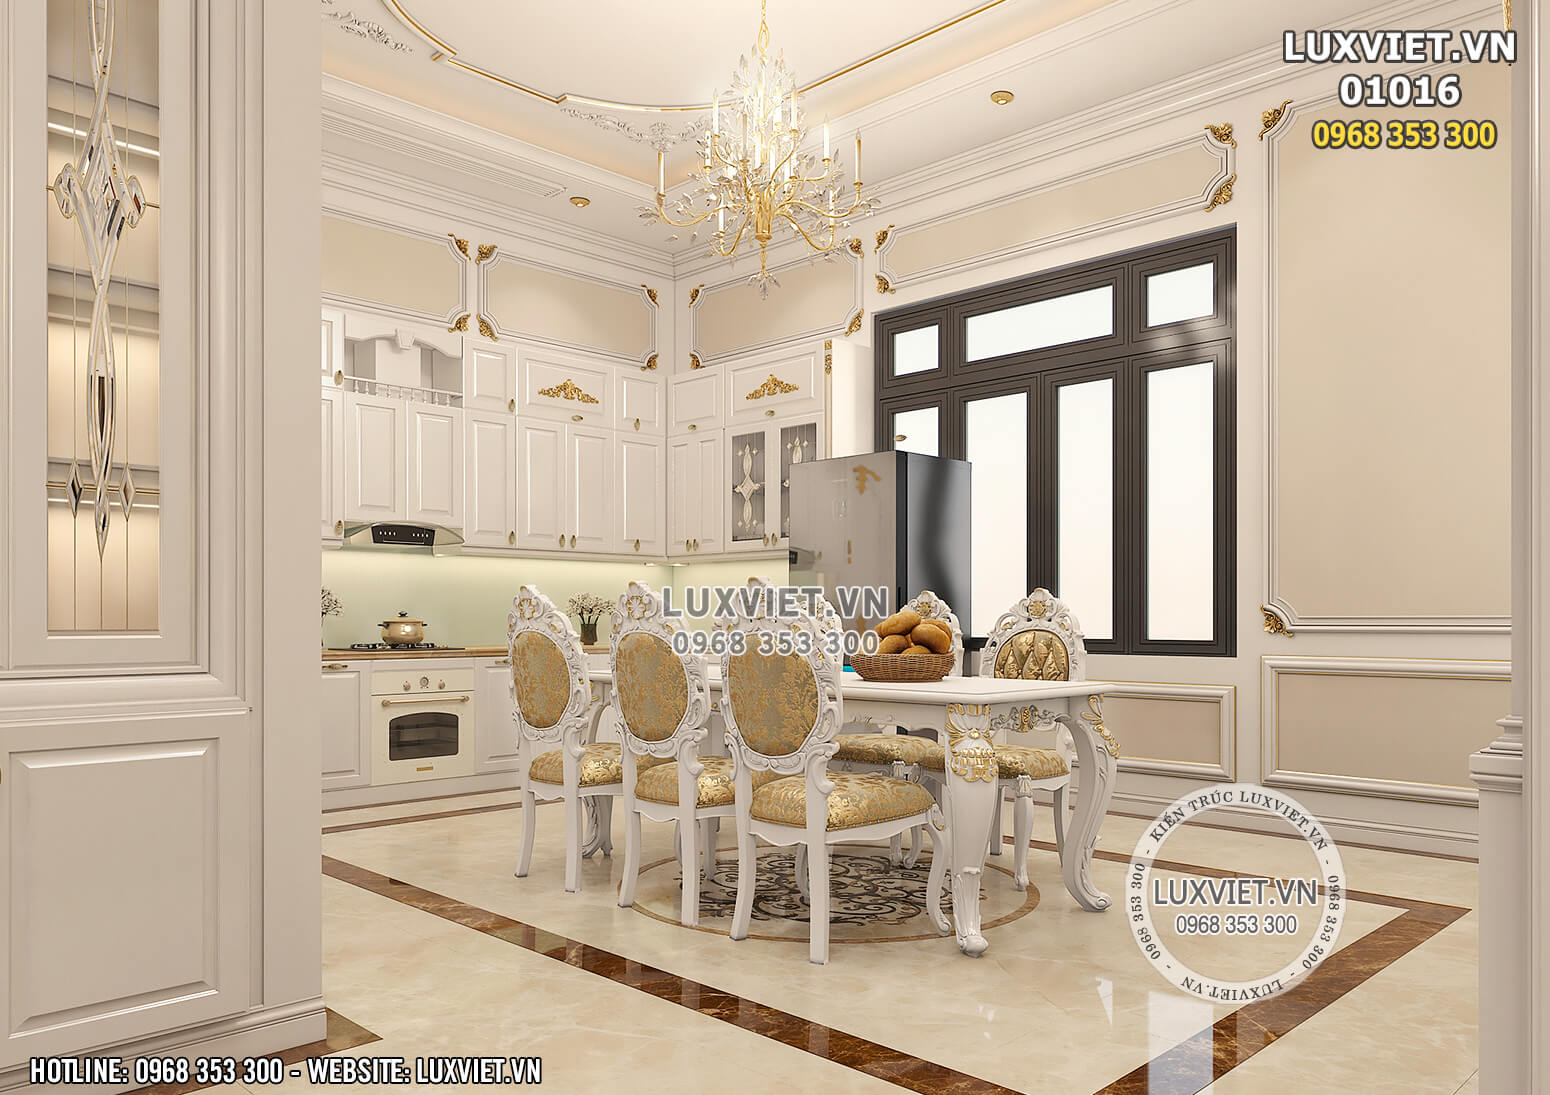 Hình ảnh: Không gian phòng bếp của mẫu thiết kế nội thất tân cổ điển